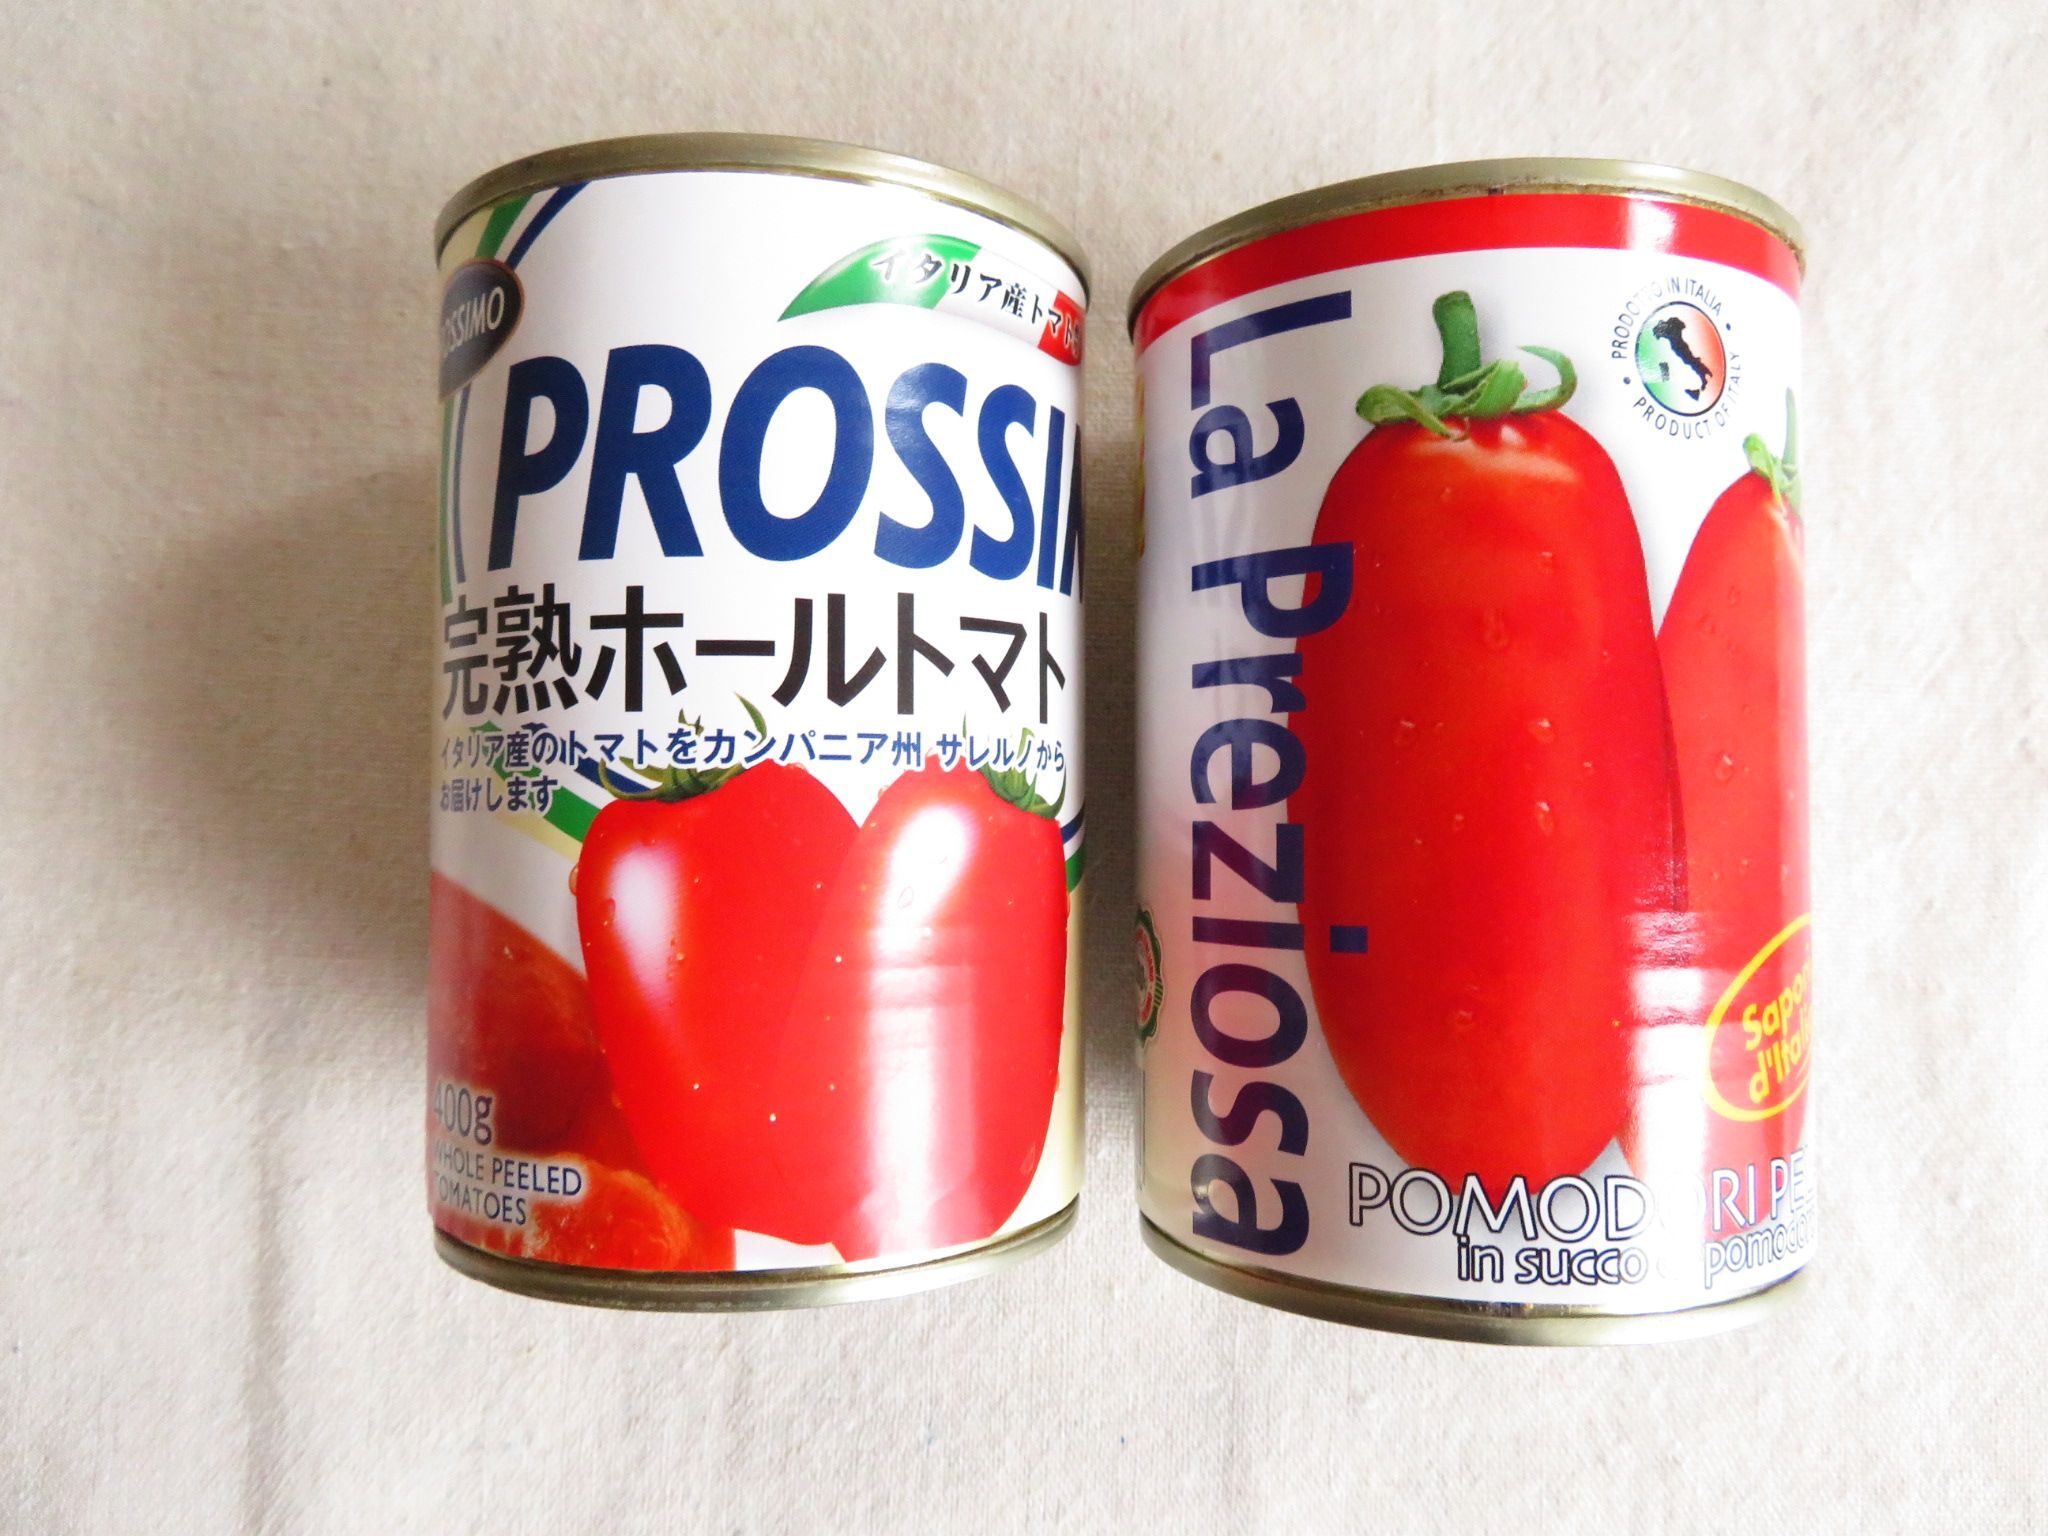 トマト缶 いつもカットタイプばかり使ってない こうするだけでおいしさ急上昇 暮らしニスタ